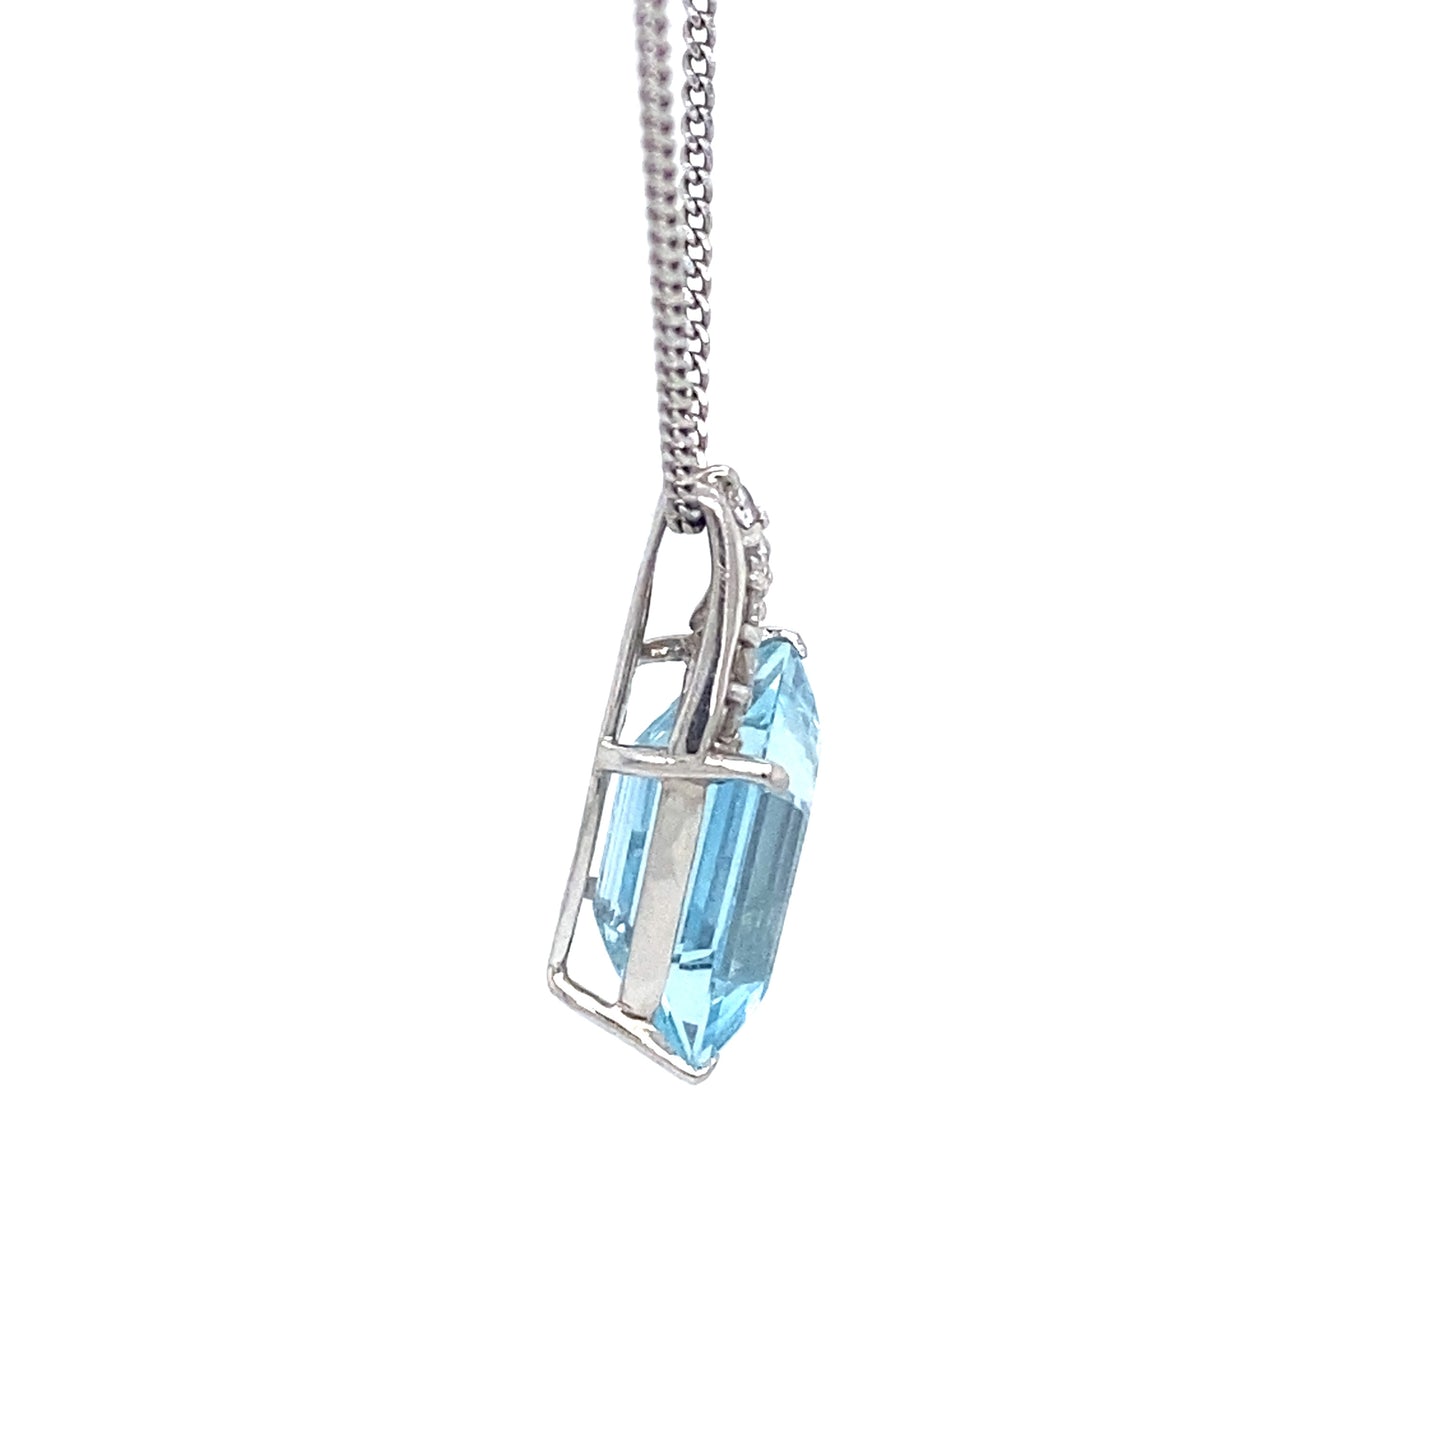 Circa 1990s 4.61ct Aquamarine and Diamond Pendant and Chain in Platinum